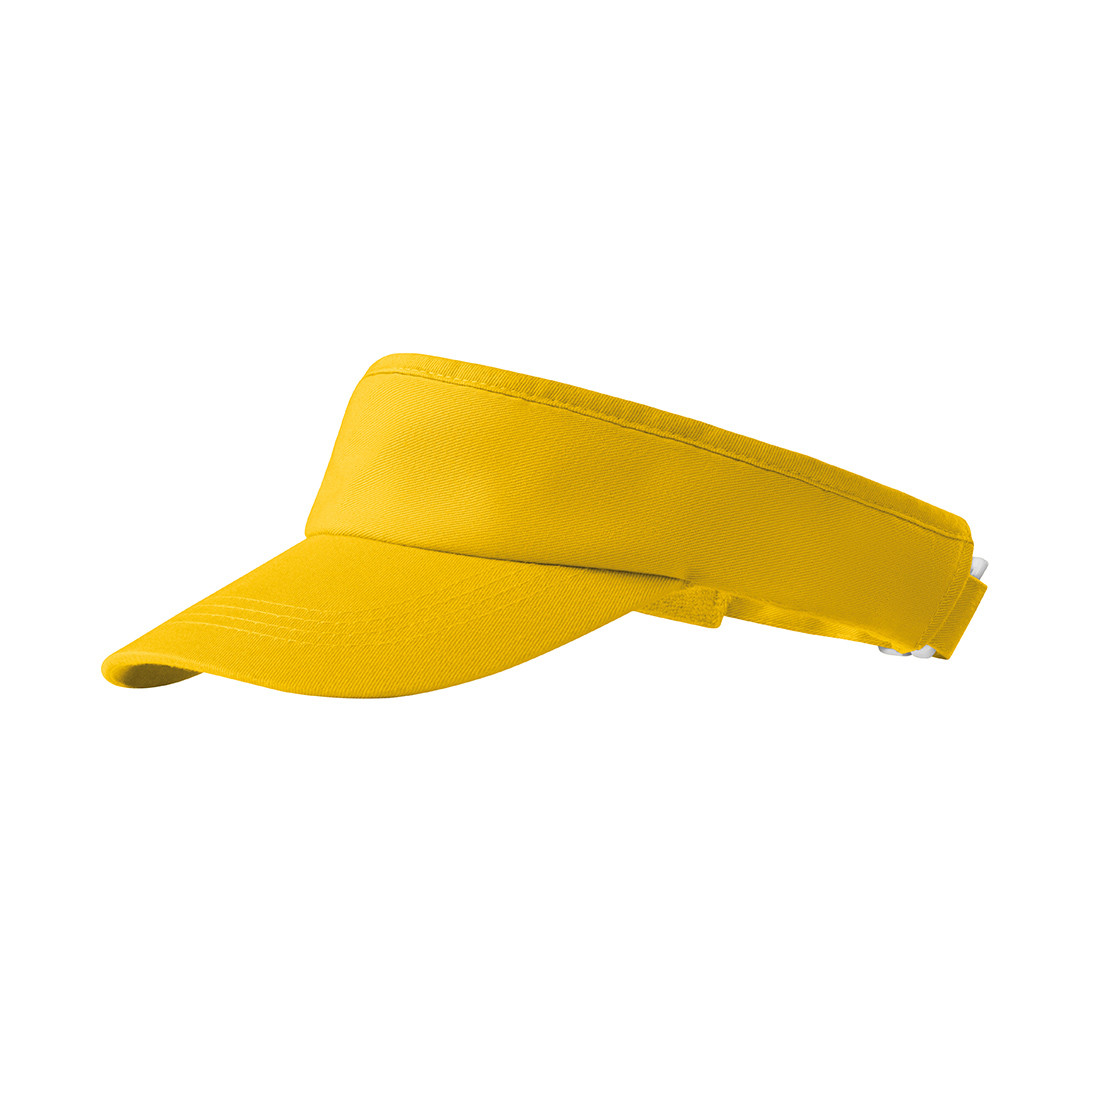 Sun visor - Safetywear